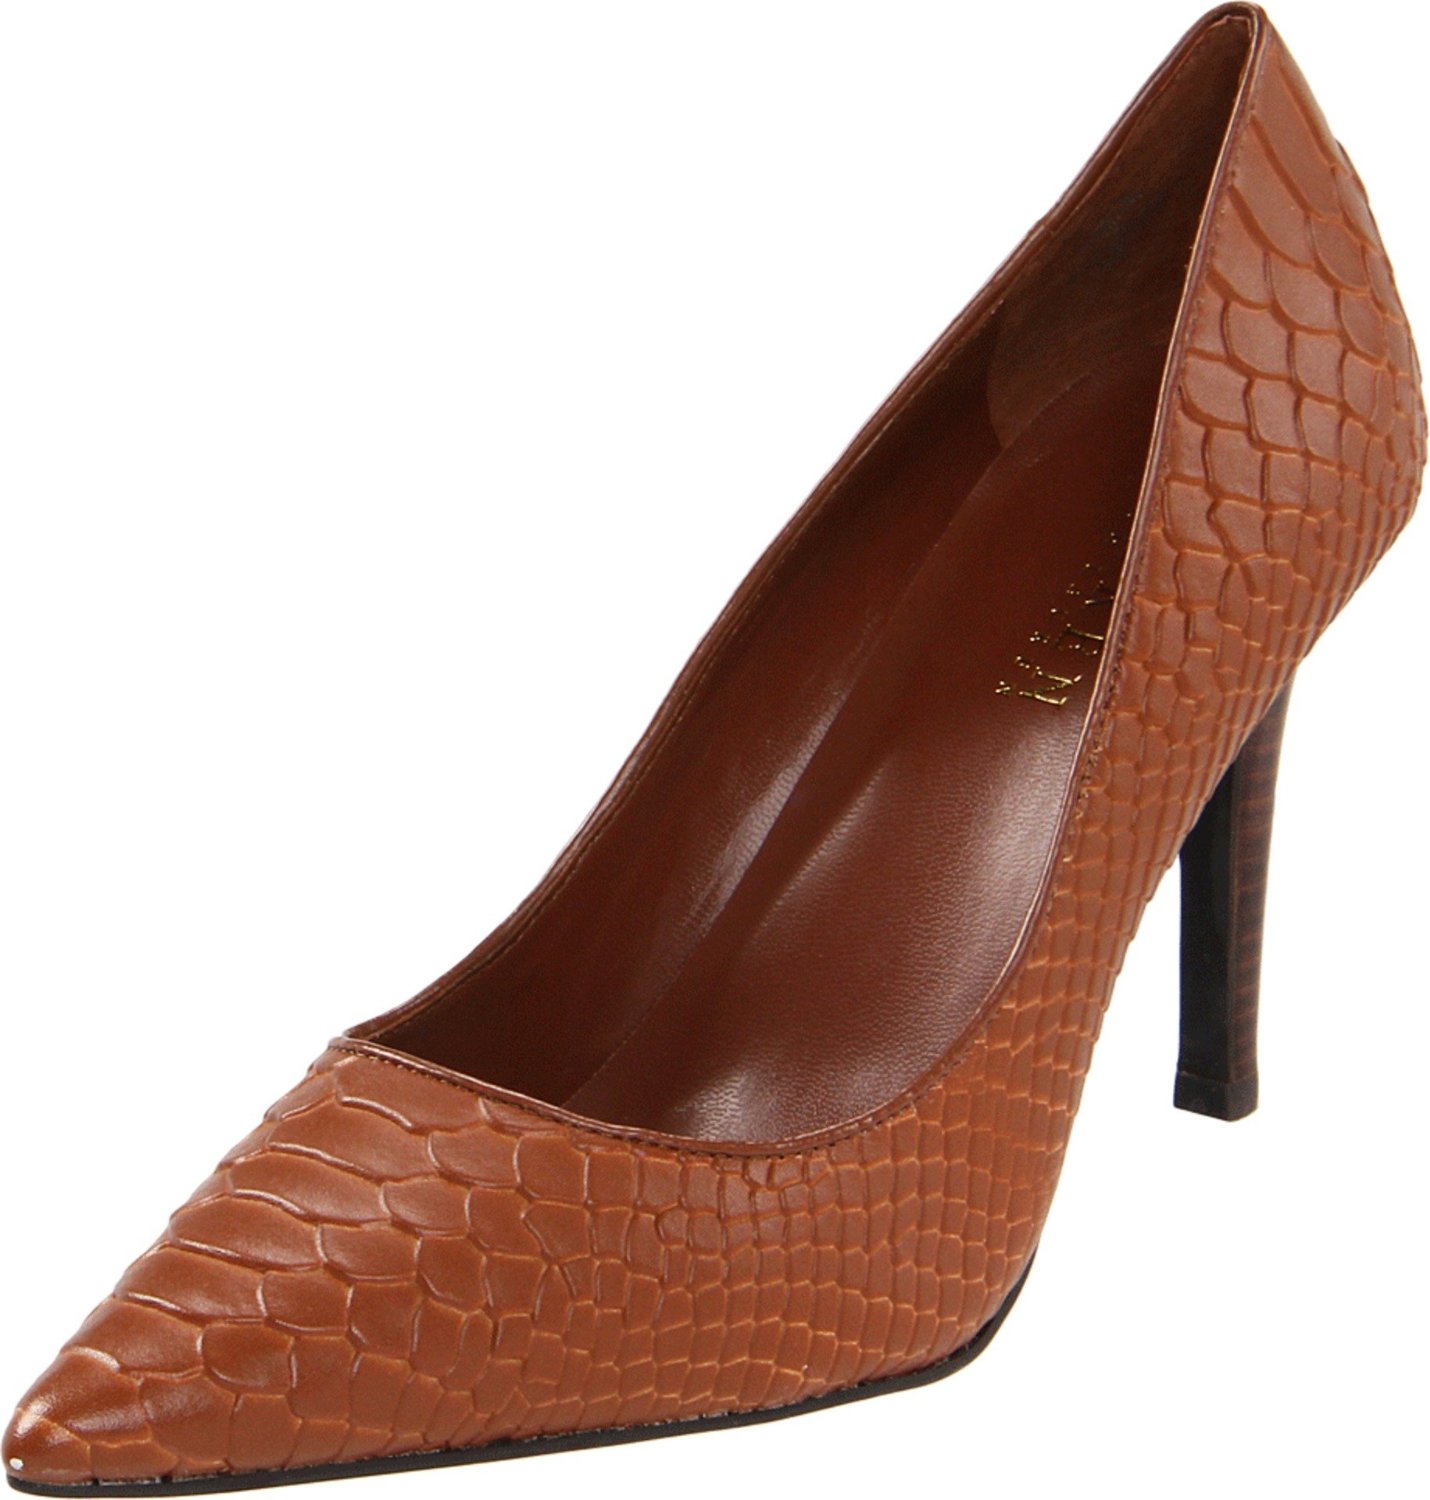 Lauren By Ralph Lauren Amelie Leather Heel in Brown (polo tan) | Lyst